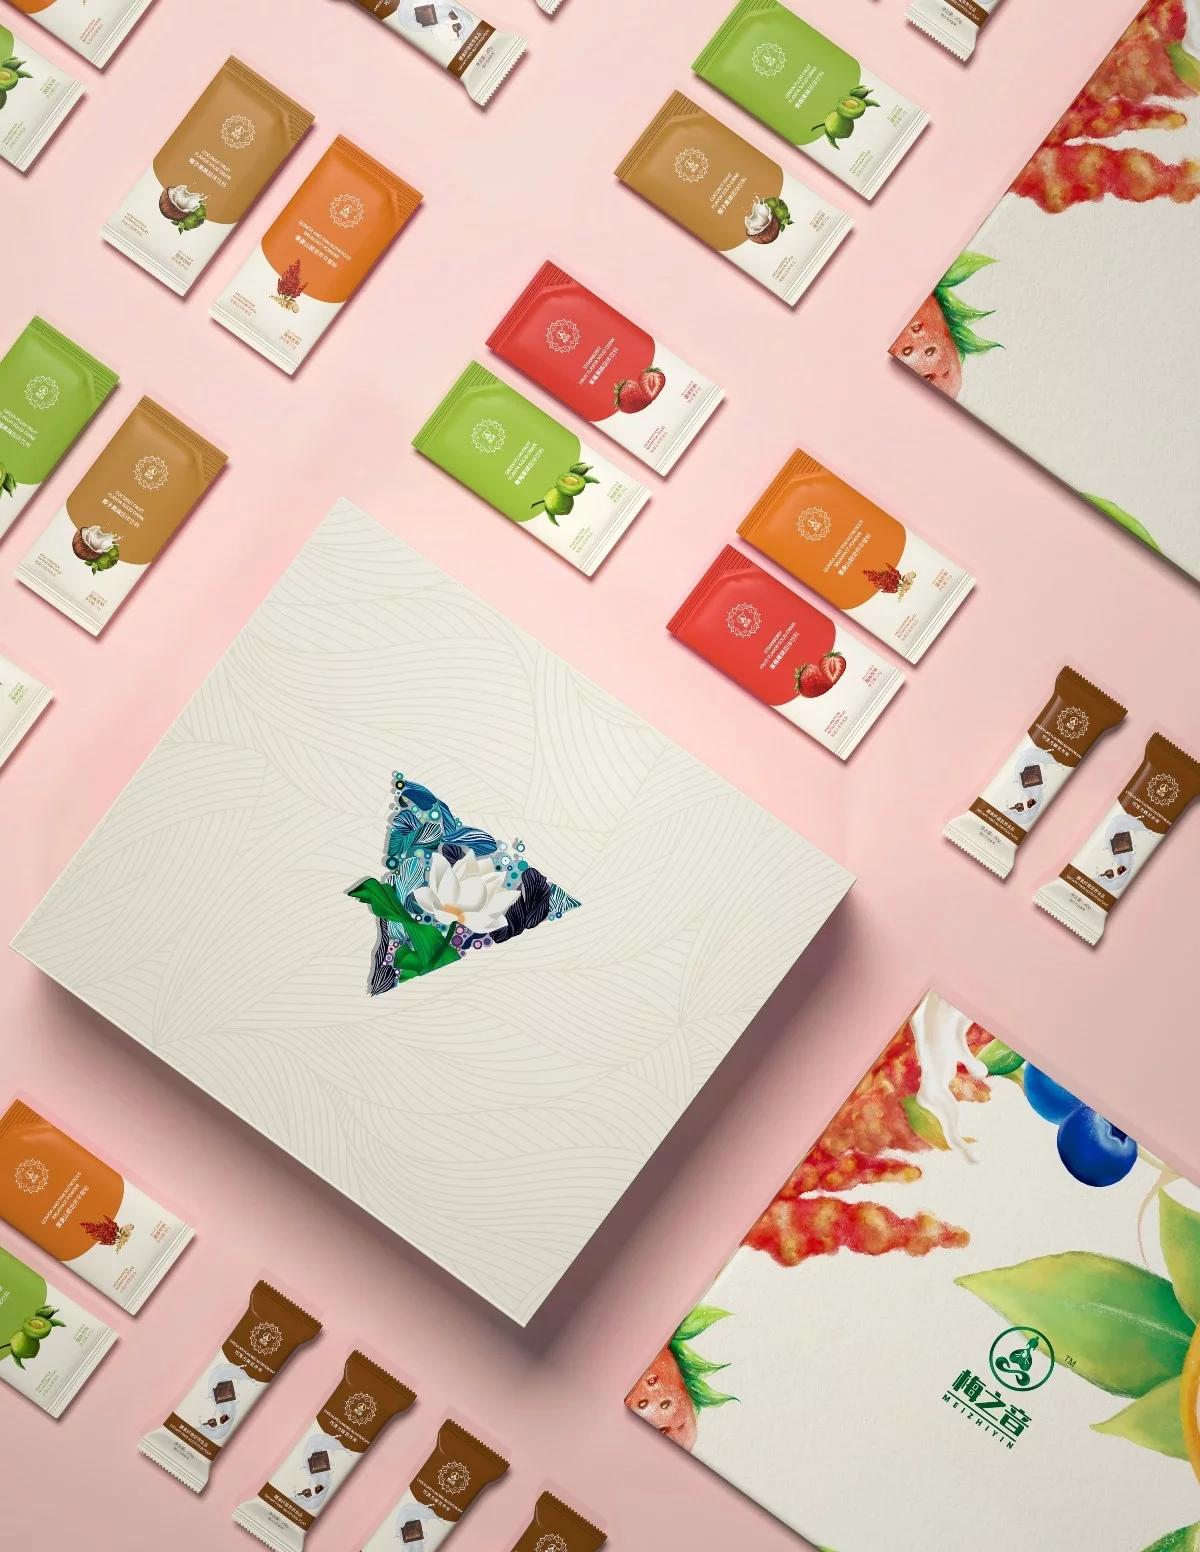 风格新颖特色靓丽的水果系列固体饮料礼盒包装设计